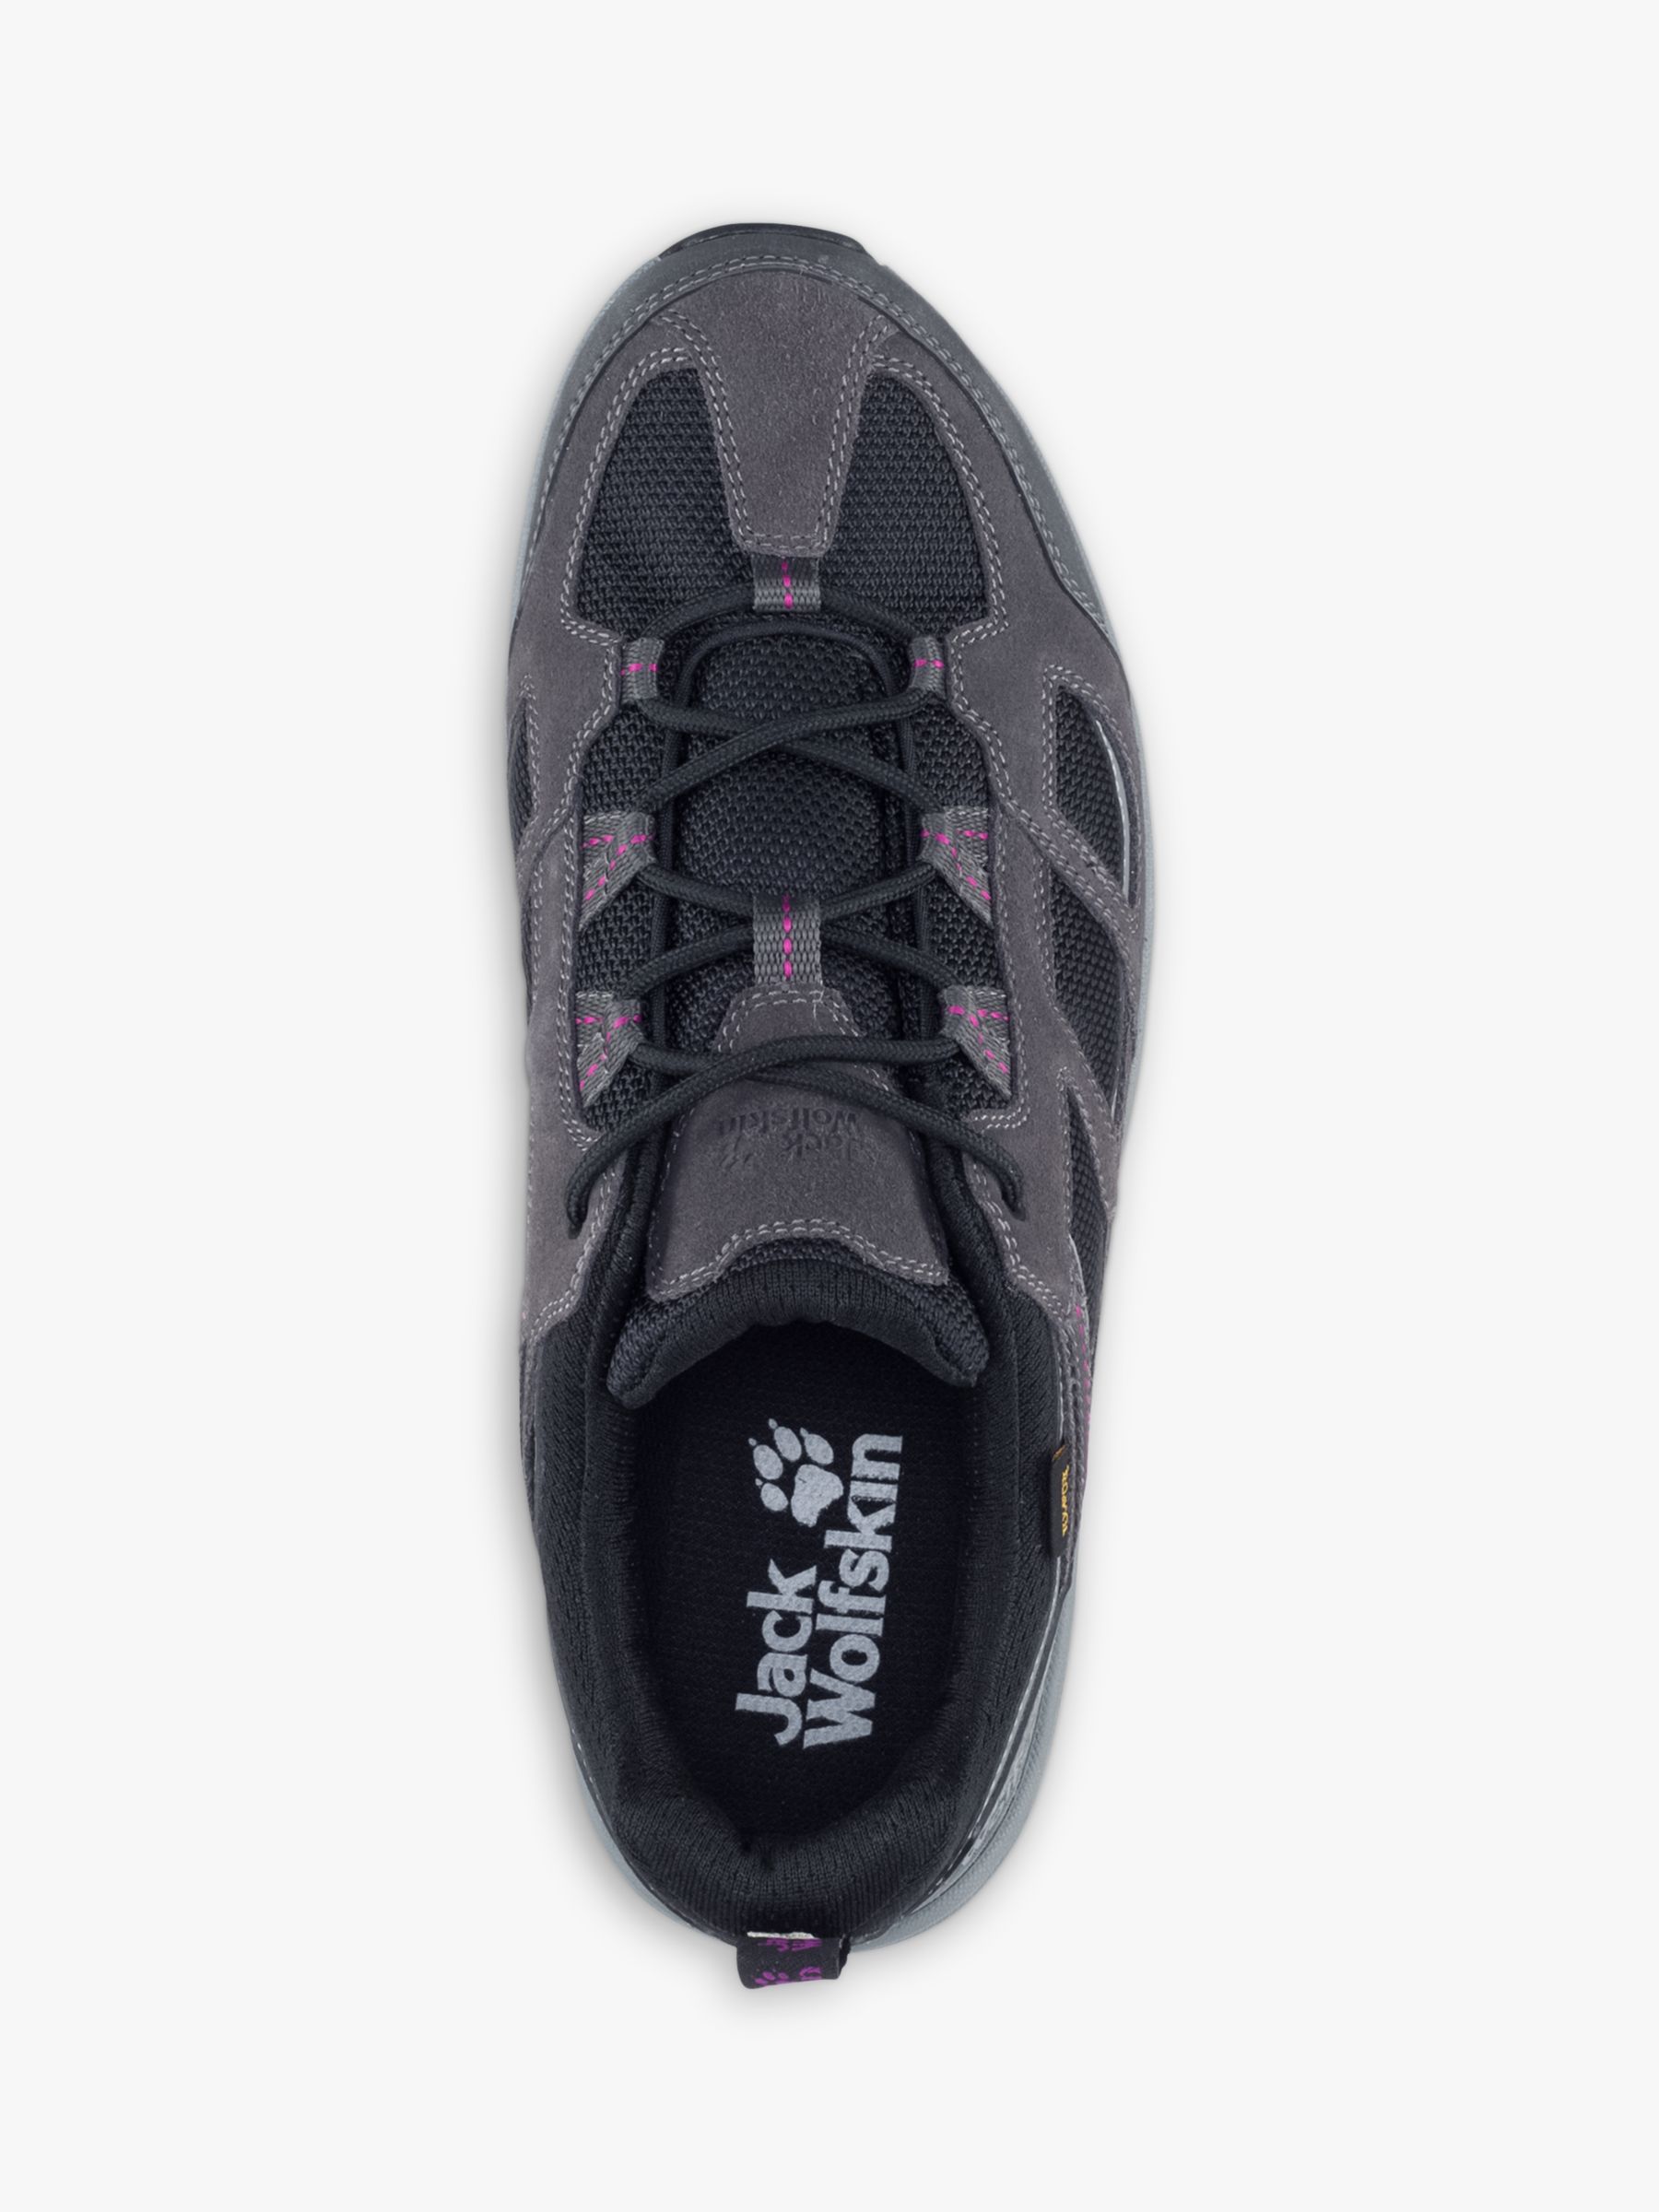 Jack Wolfskin Vojo 3 Texapore Women's Waterproof Walking Shoes, Dark Steel/Purple, 4